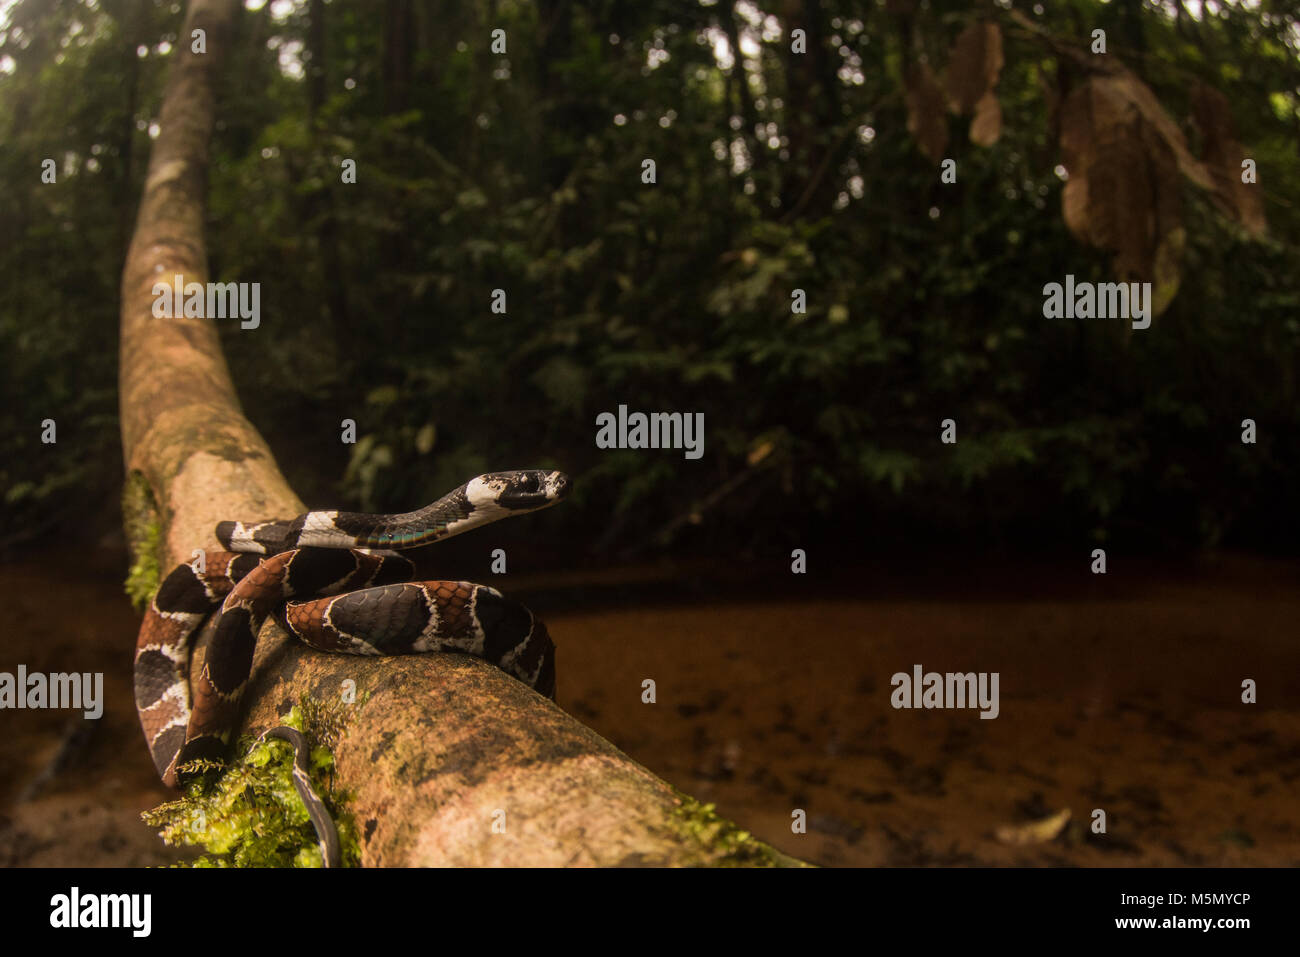 Manger un escargot (serpent Dipsas catesbyi) enroulé sur une vigne près d'un ruisseau dans la jungle. Banque D'Images